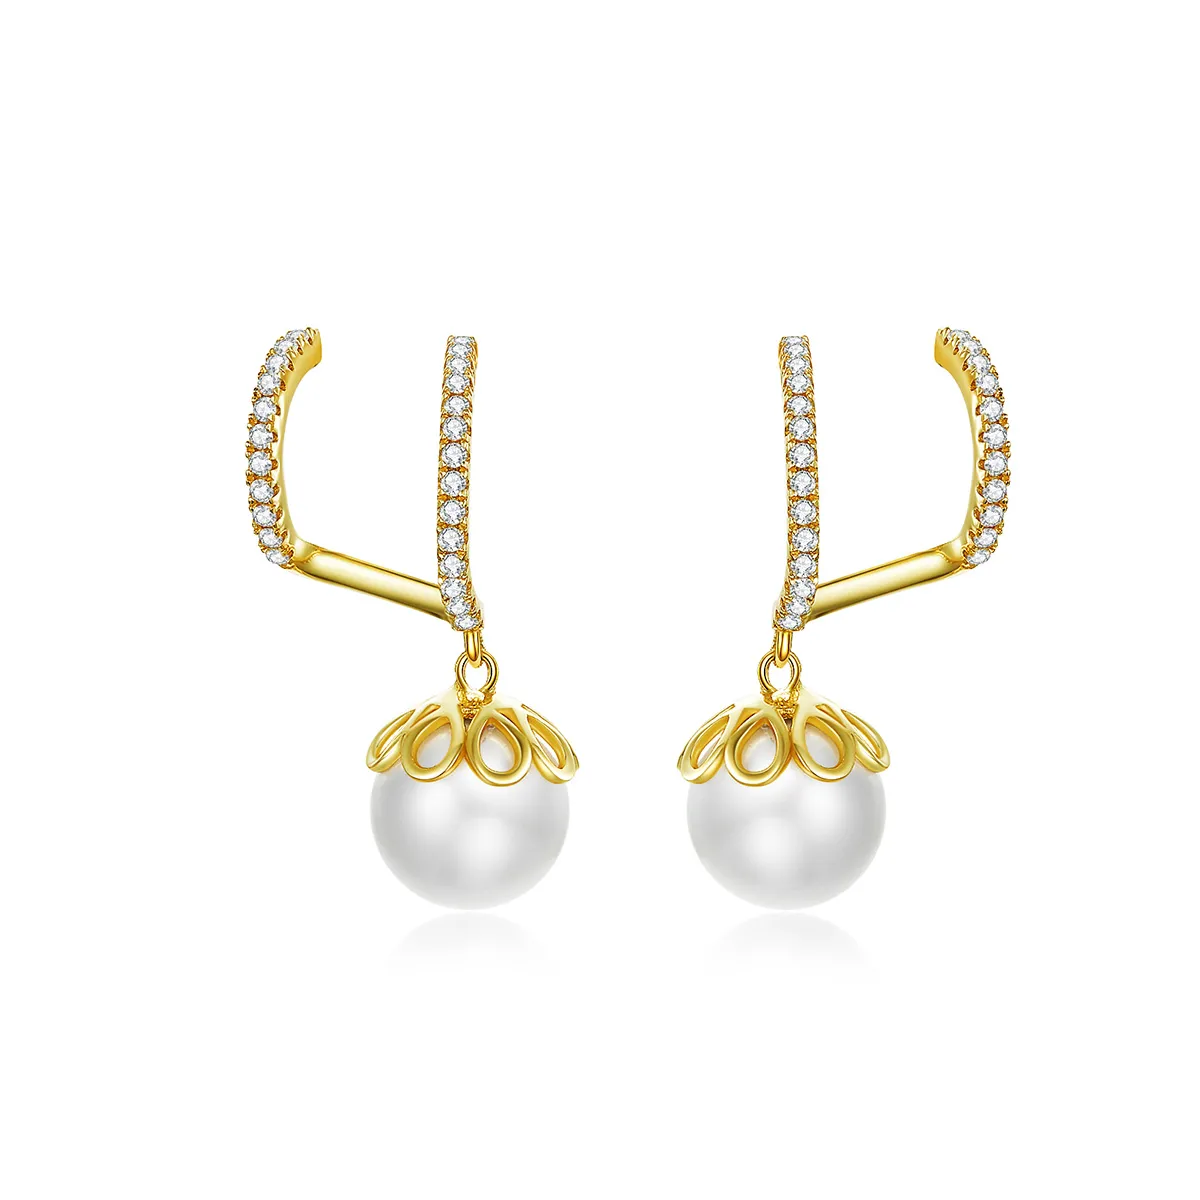 Studuri delicate cu perle în stilul Pandora - BSE151